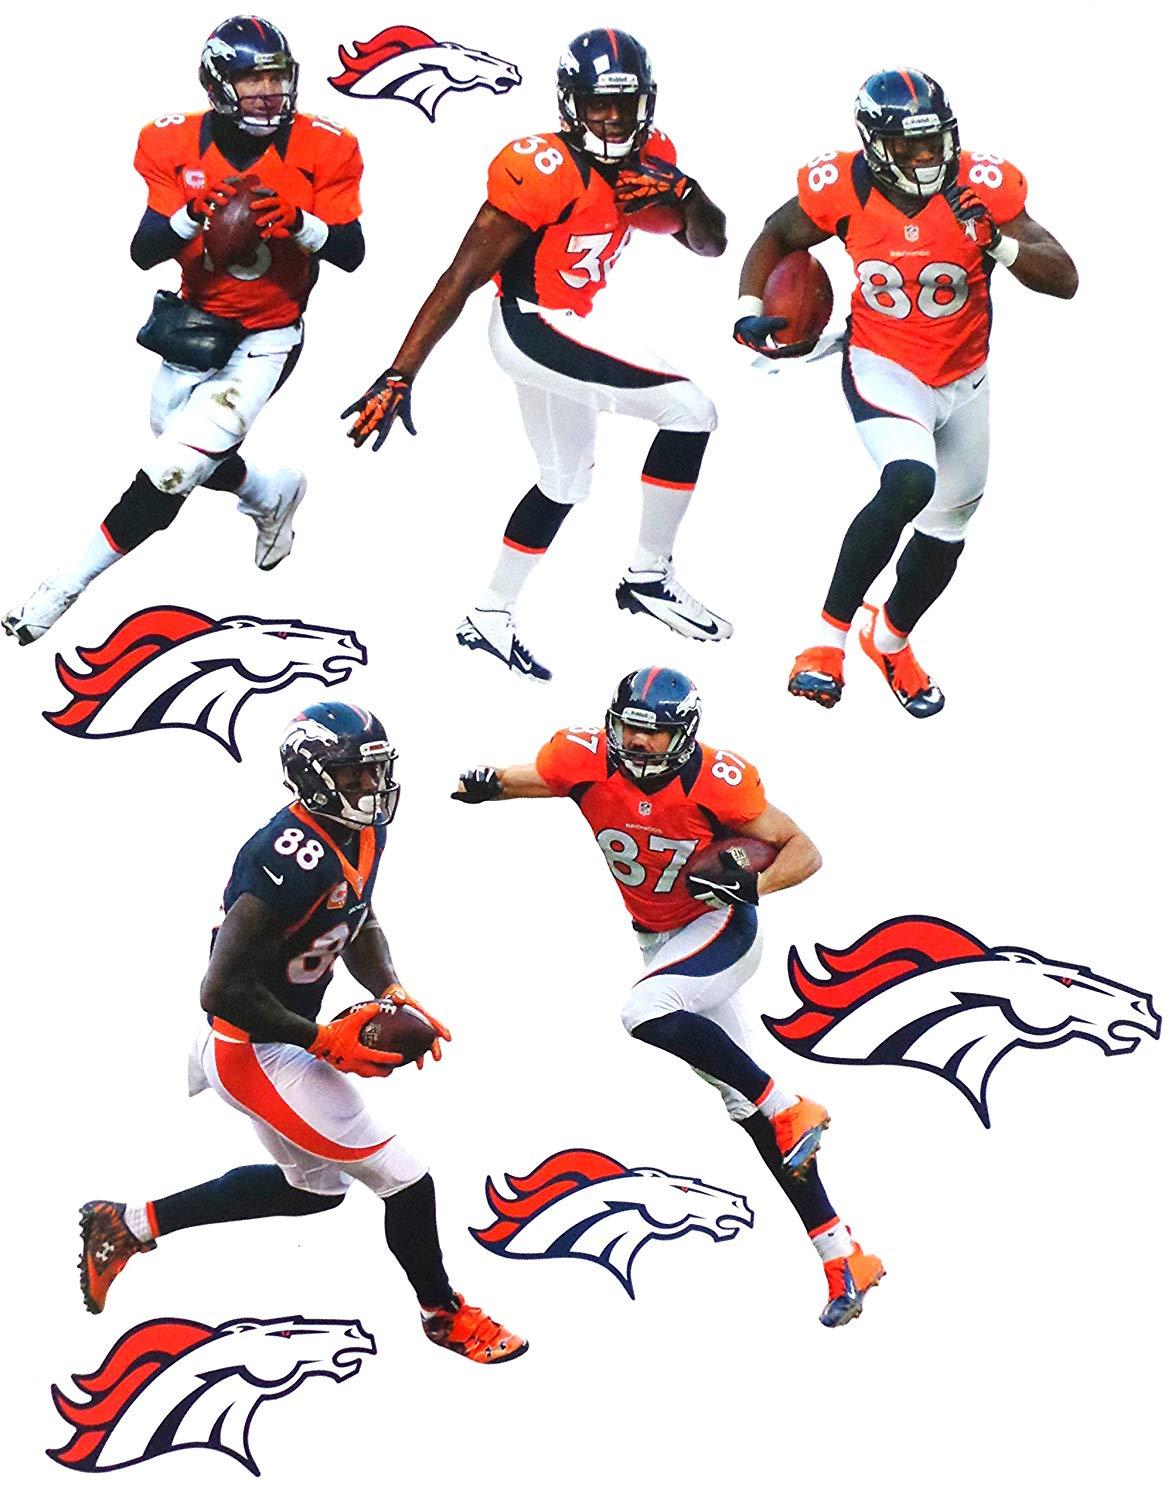 NFL Broncos Logo - Amazon.com: FATHEAD Denver Broncos Team Set 5 Players + 5 Broncos ...